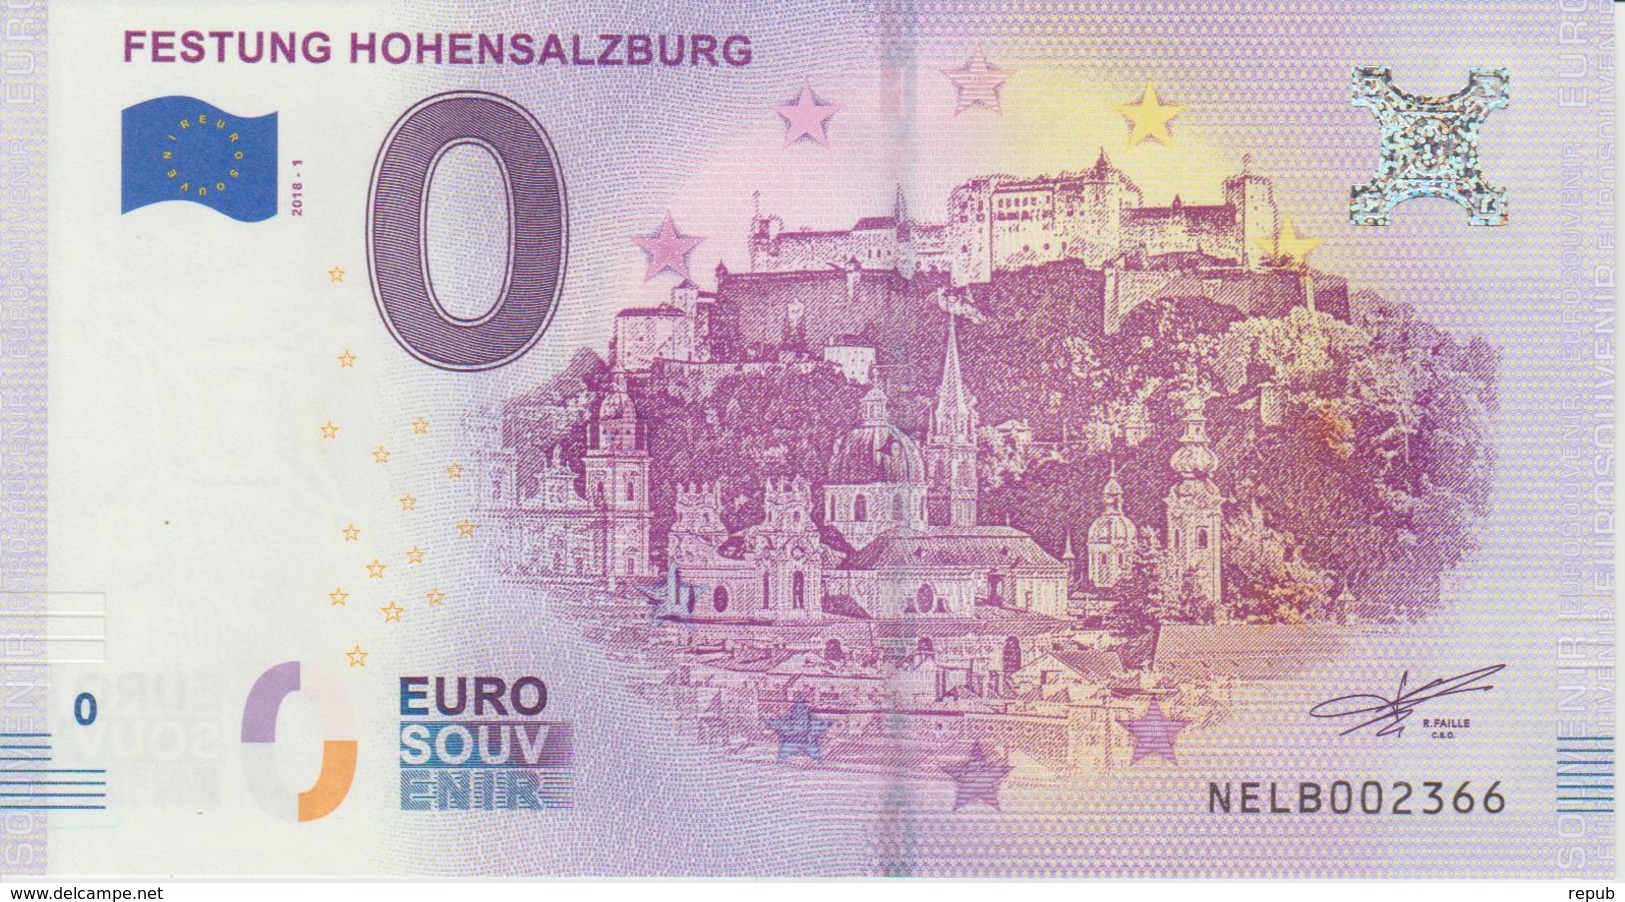 Billet Touristique 0 Euro Souvenir Autriche Festung Hohensalzburg 2018-1 N°NELB002366 - Private Proofs / Unofficial